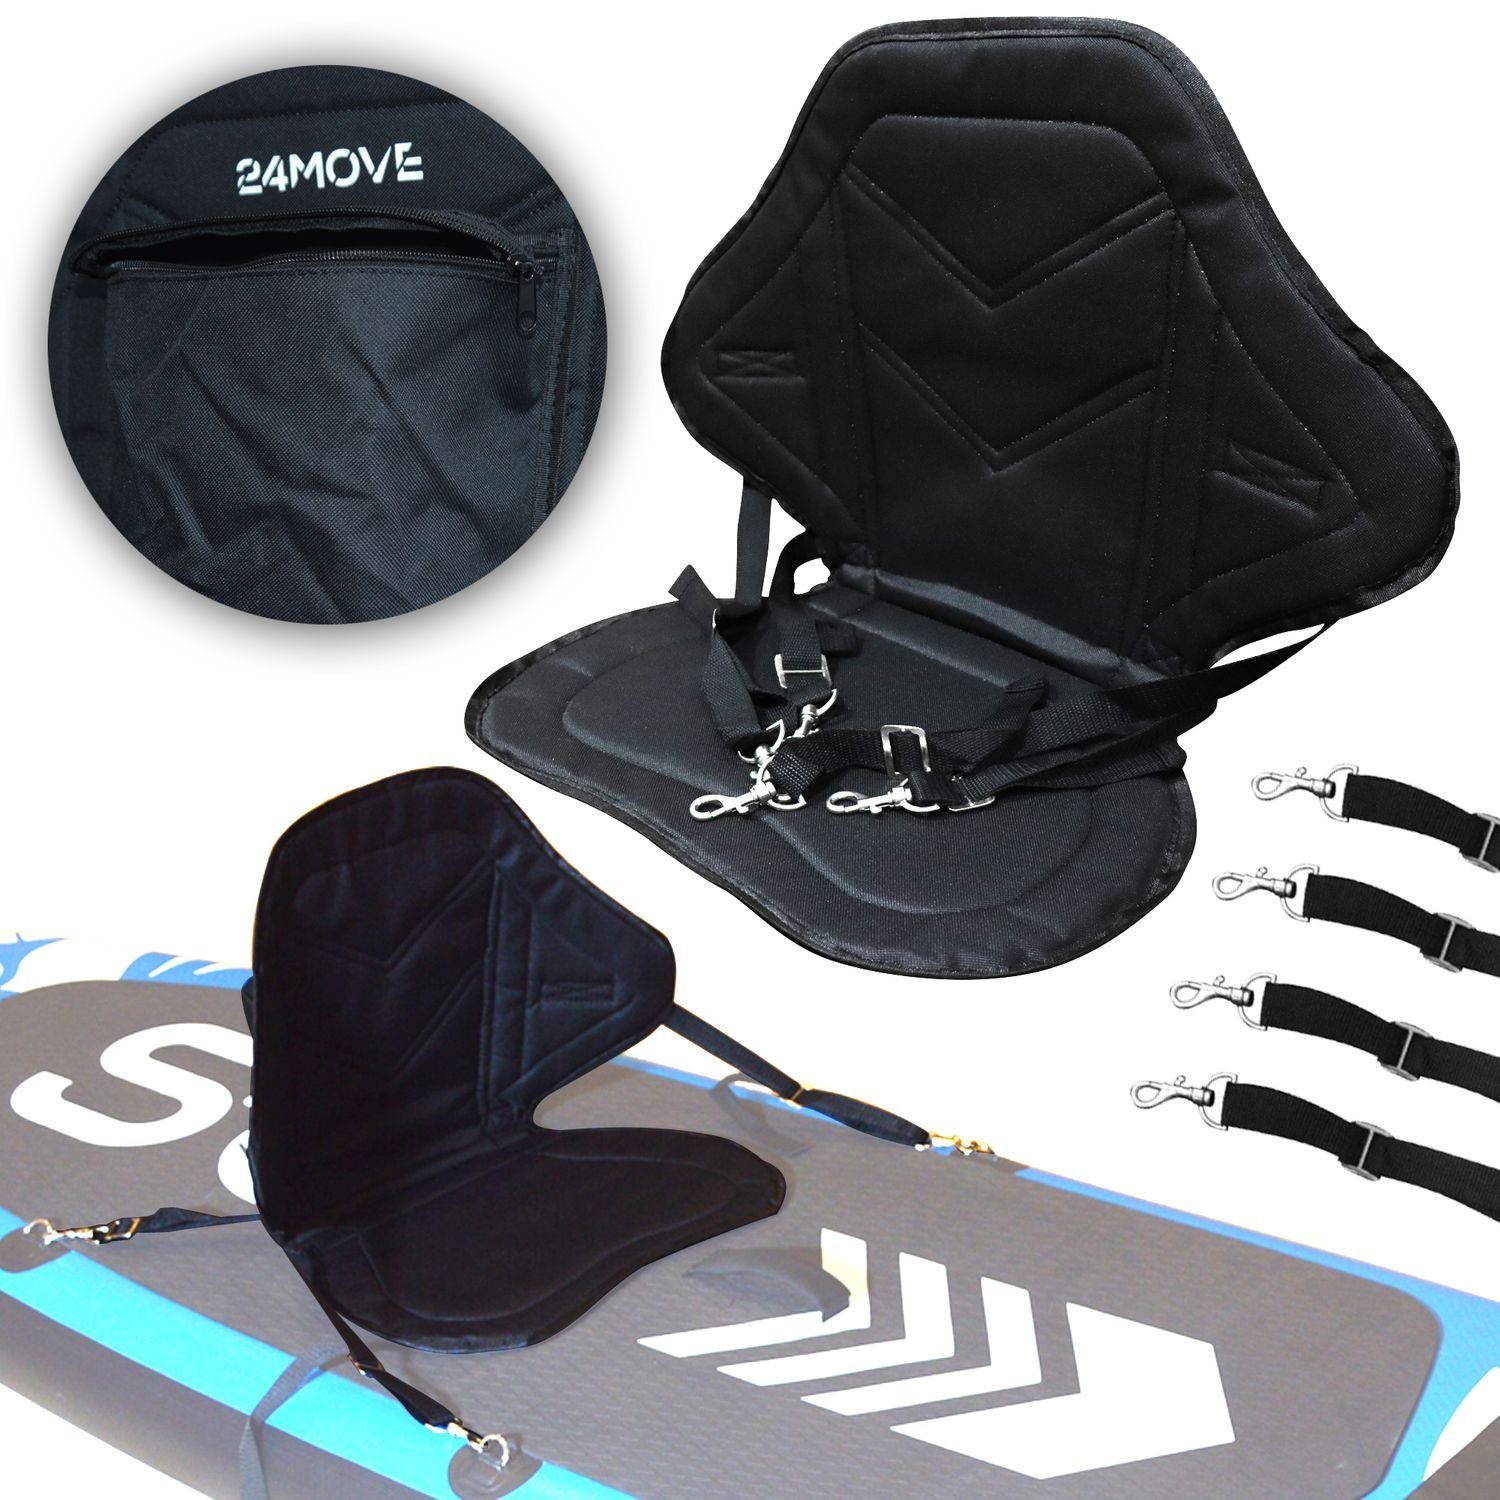 (verstellbare integrierter und SUP-Rückenlehne Paddle universal, 24Move Sitz Tasche), einsetzbar Gurtbänder elastisch Kajak SUP Boards, gepolstert für variabel